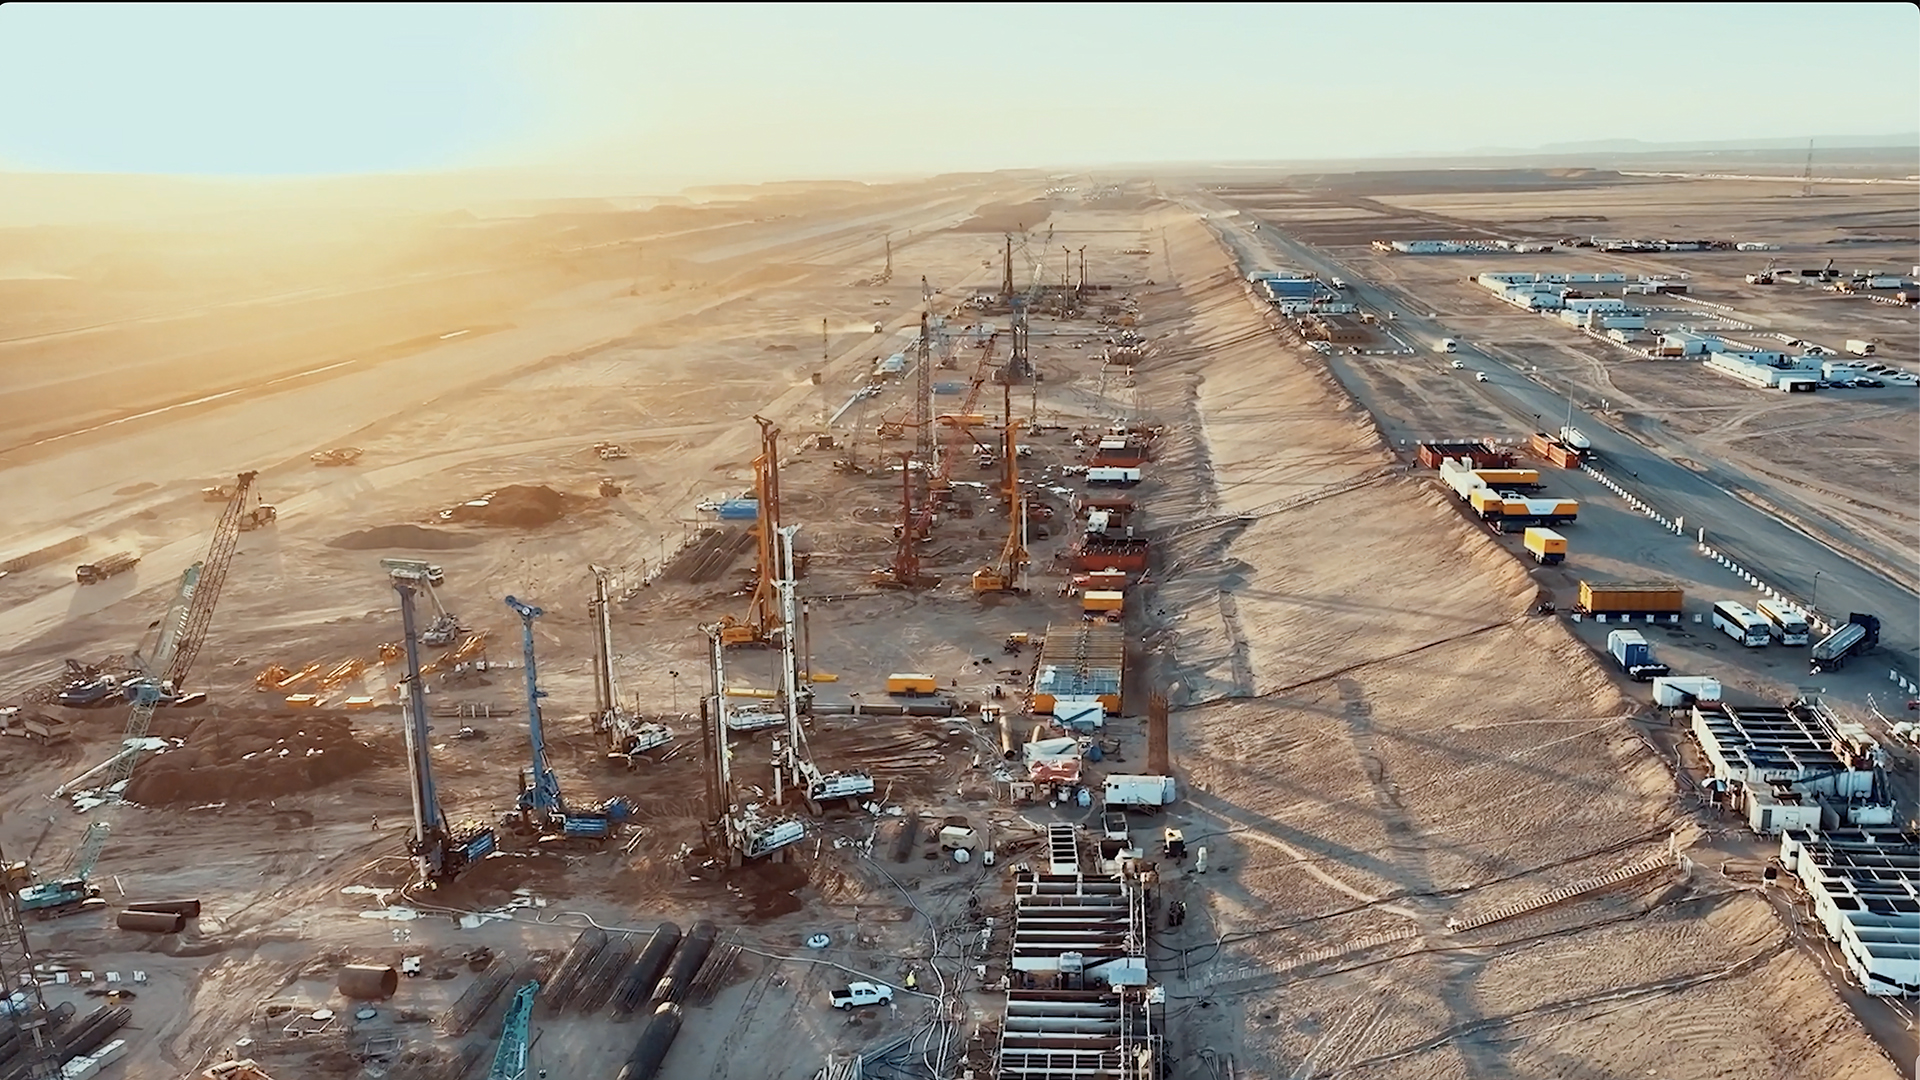 Futurisztikus megapolisz építése zajlik Szaúd-Arábiában, bemutatták a legújabb fejleményeket